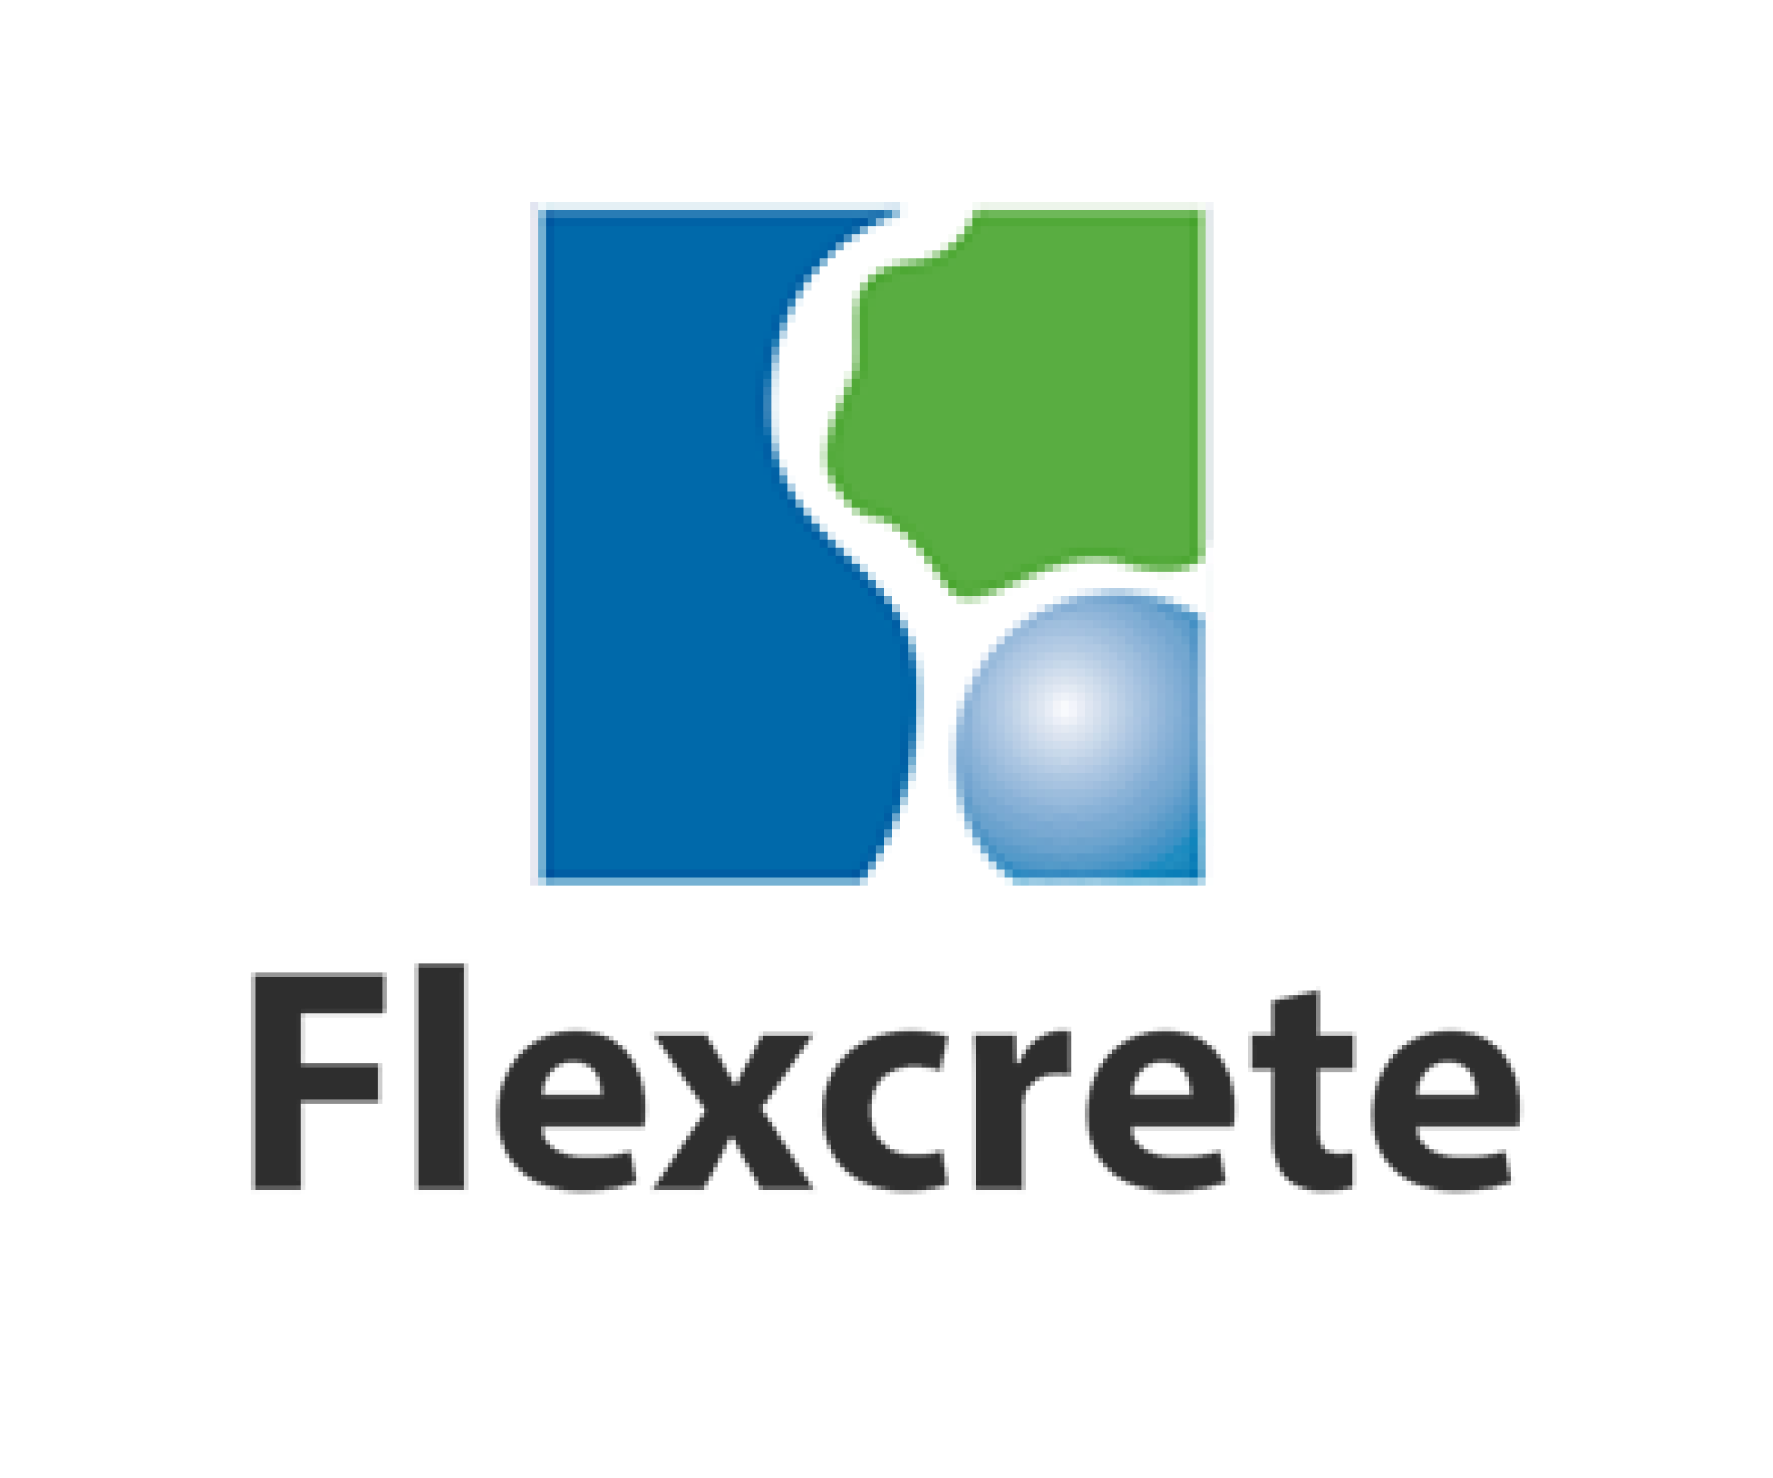 flexcrete logo